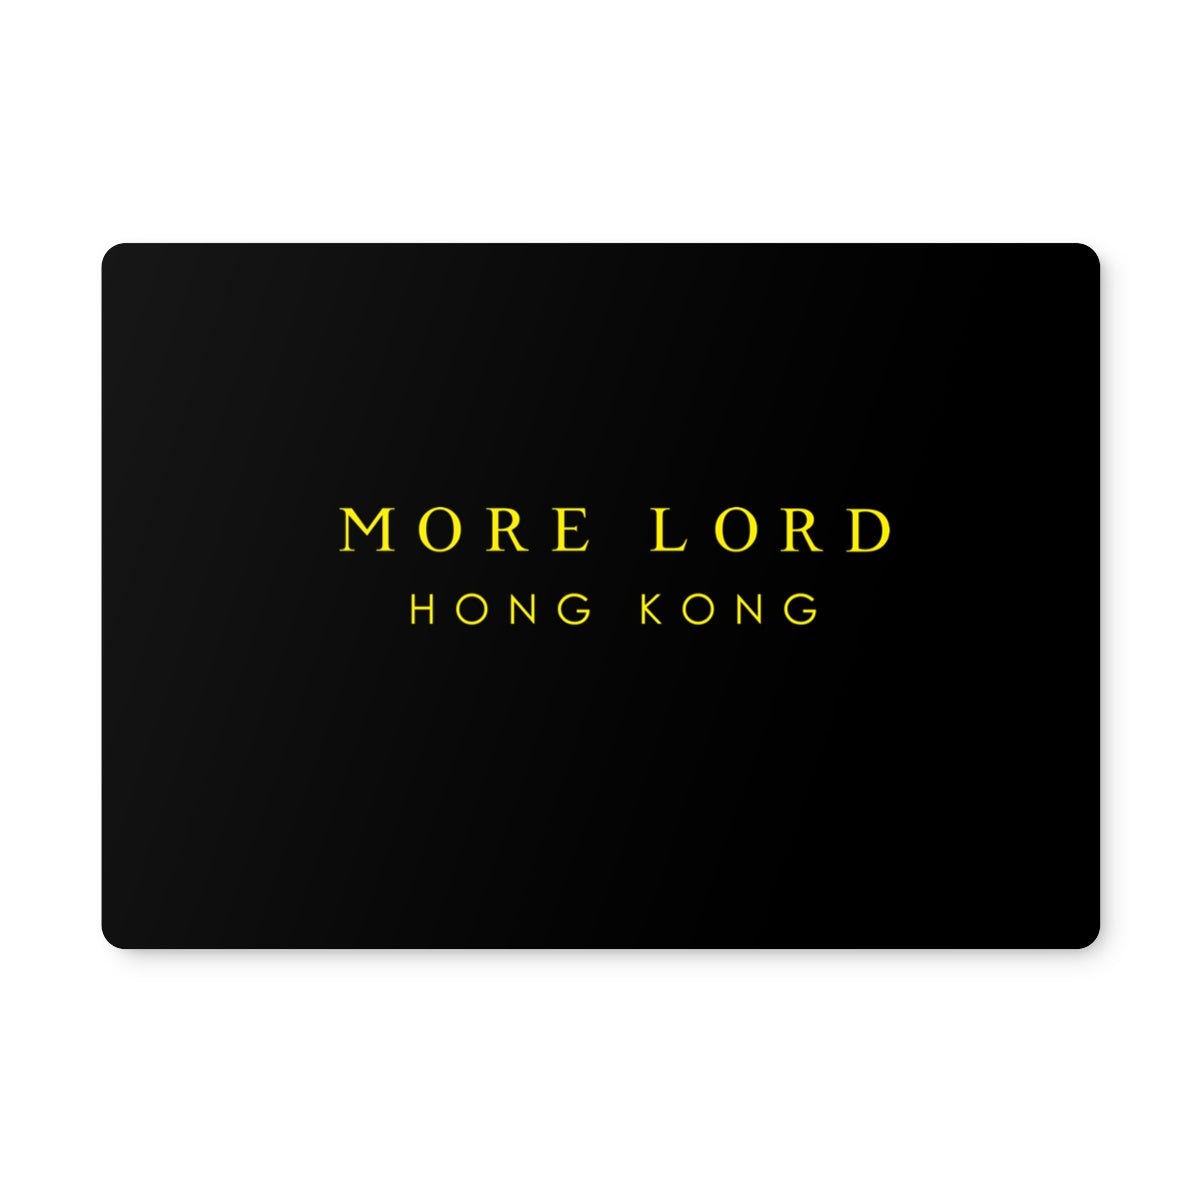 More Lord Hong Kong  Placemat